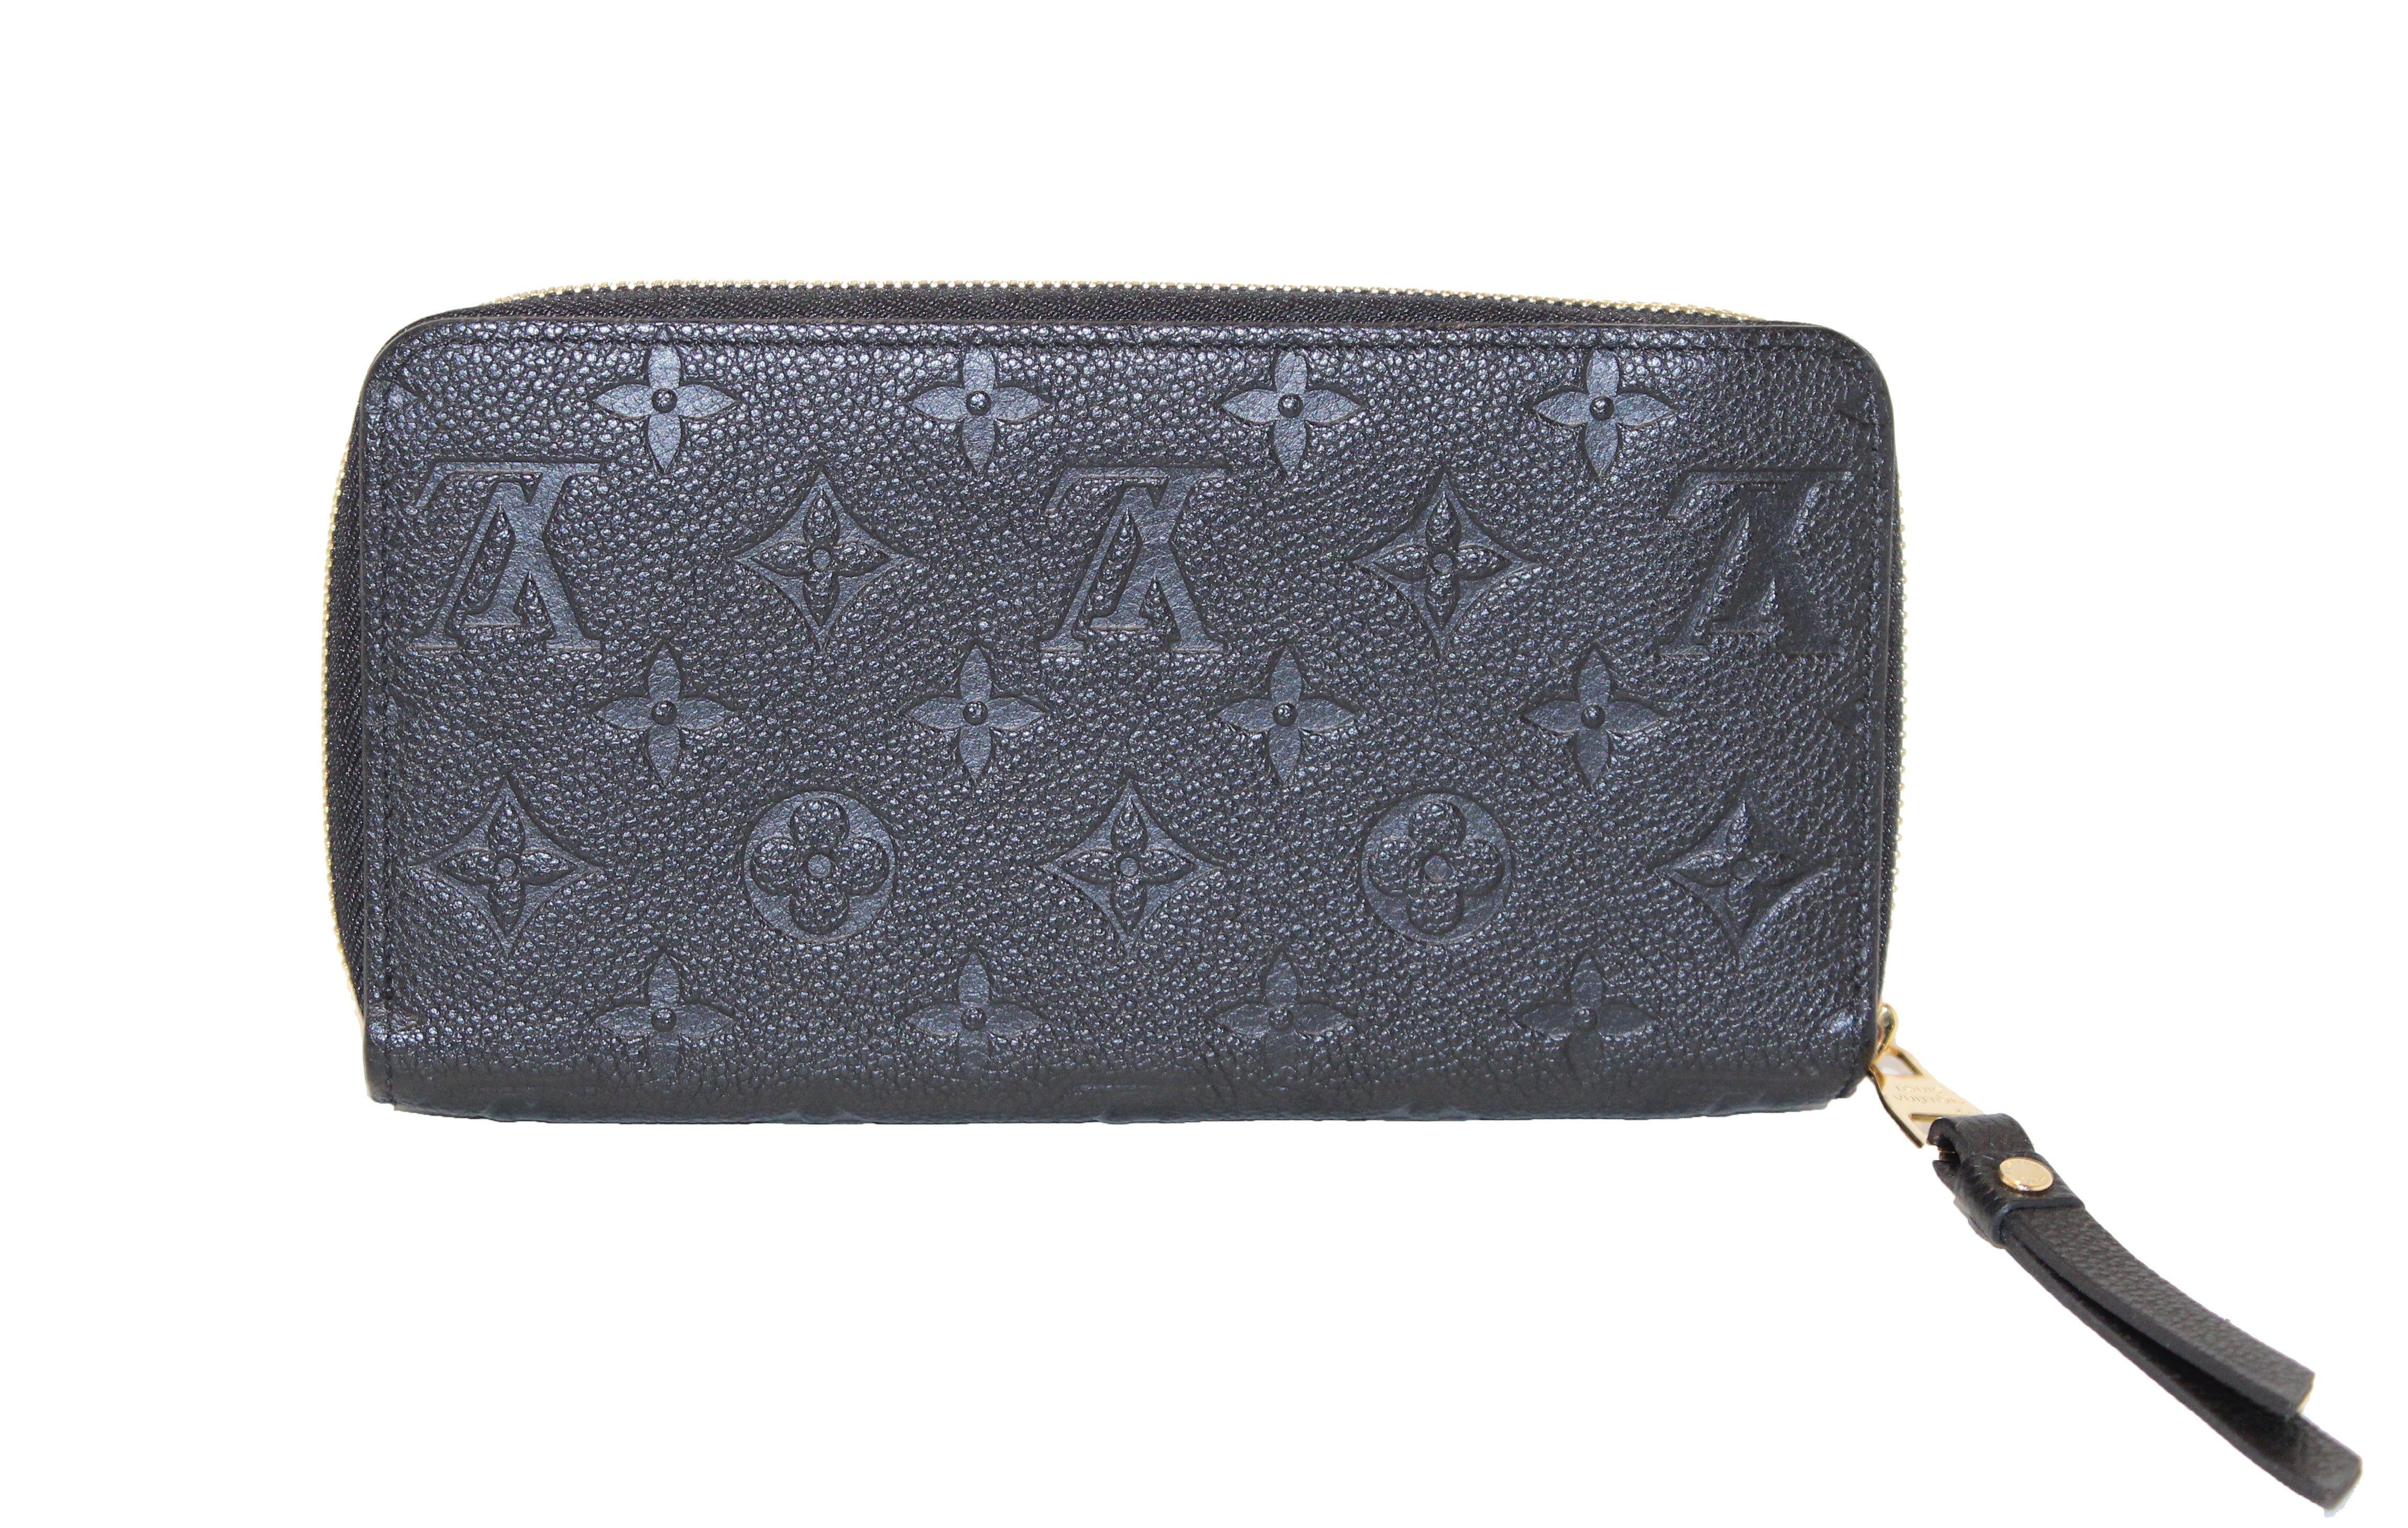 Authentic Louis Vuitton Black Monogram Empreinte Leather Zippy Wallet